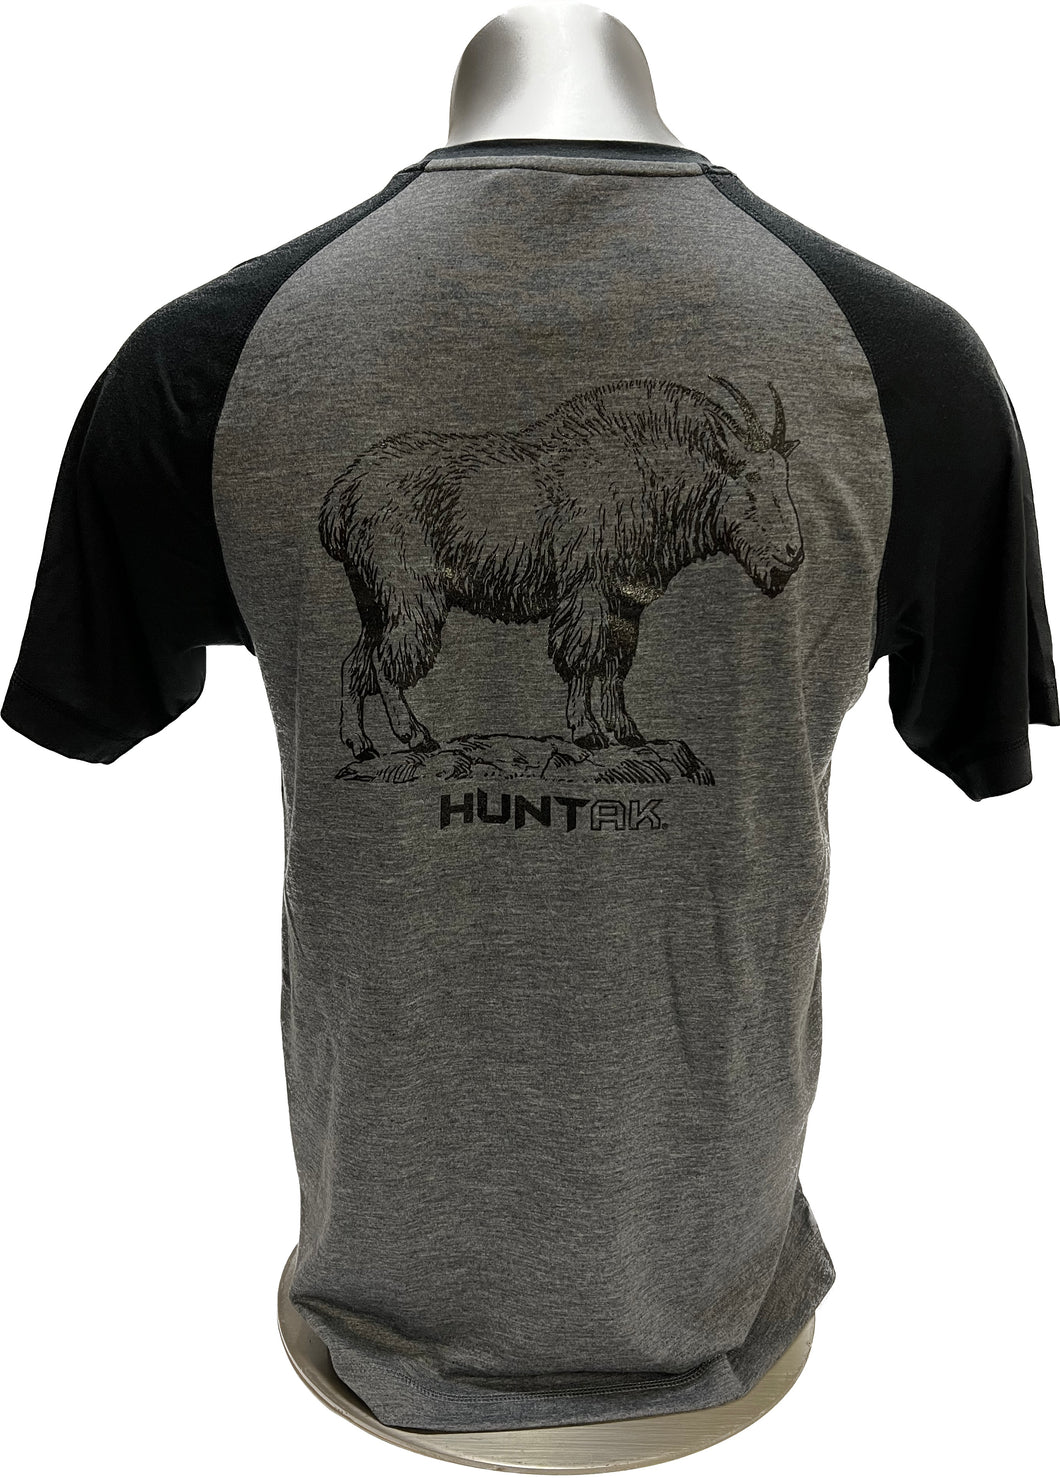 HUNT AK - Mountain Goat - Tri-Blend T-Shirt